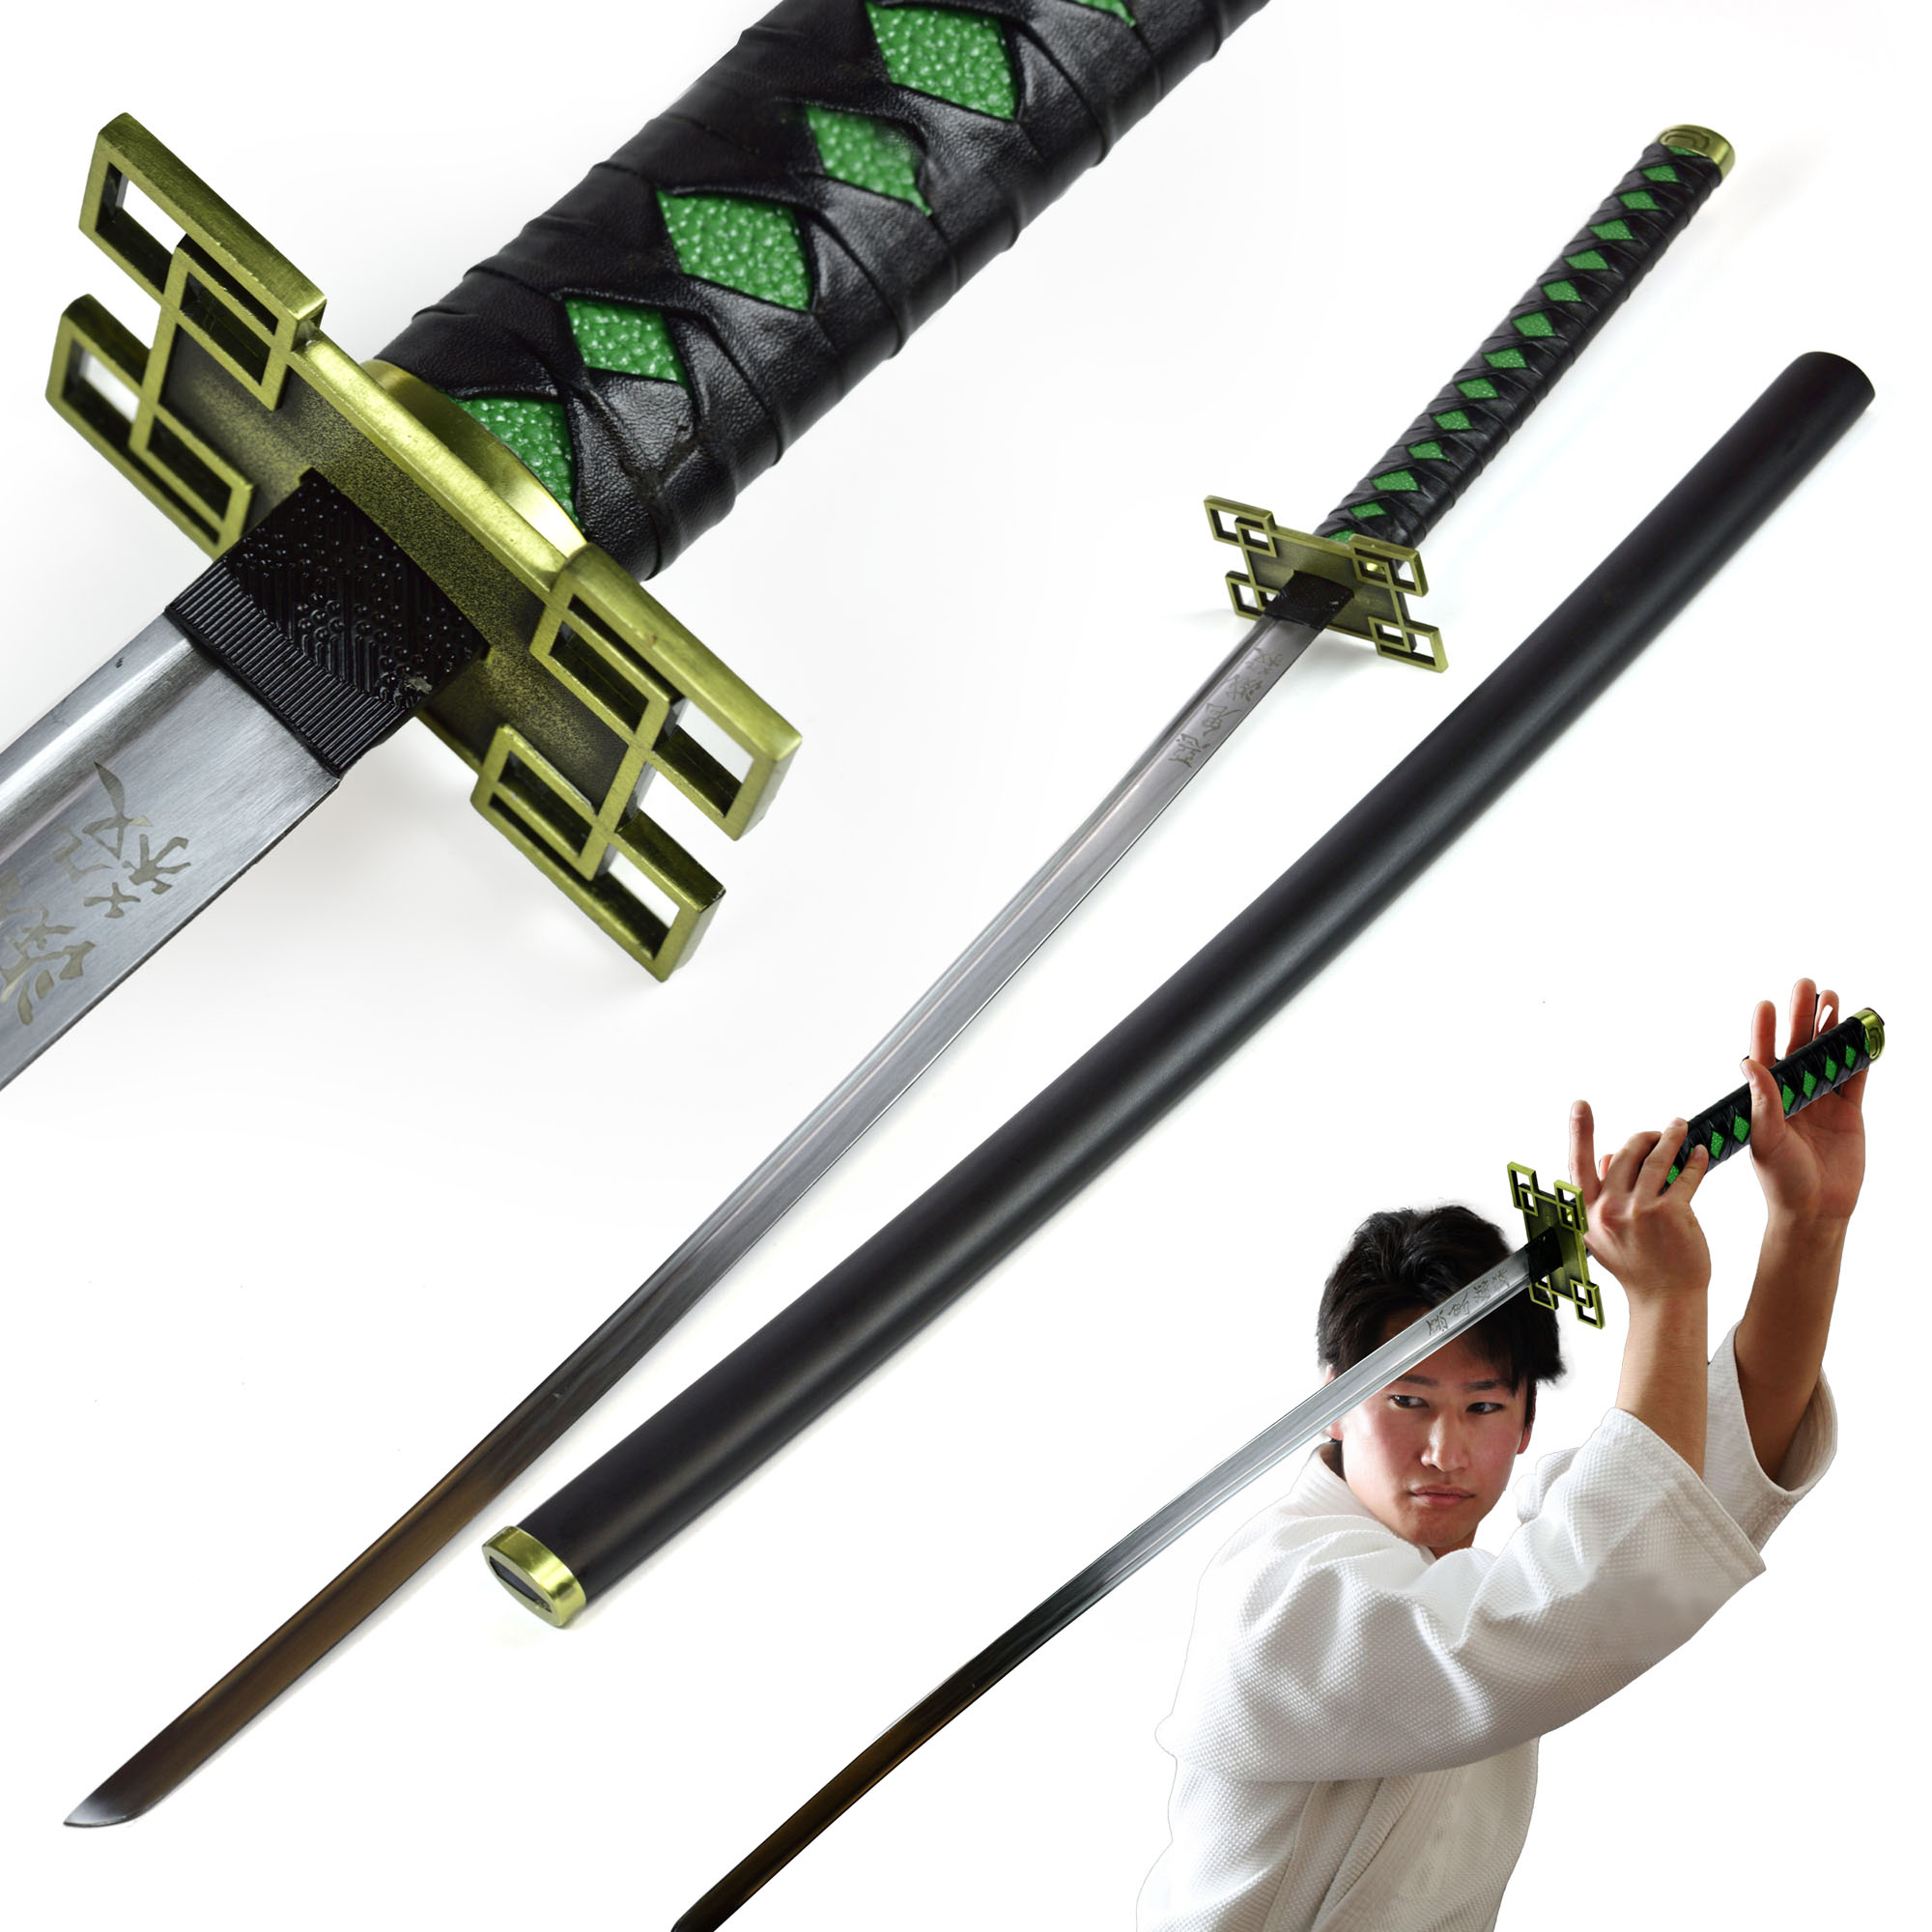 Demon Slayer: Kimetsu no Yaiba - Tokitou Muichirou's Sword 